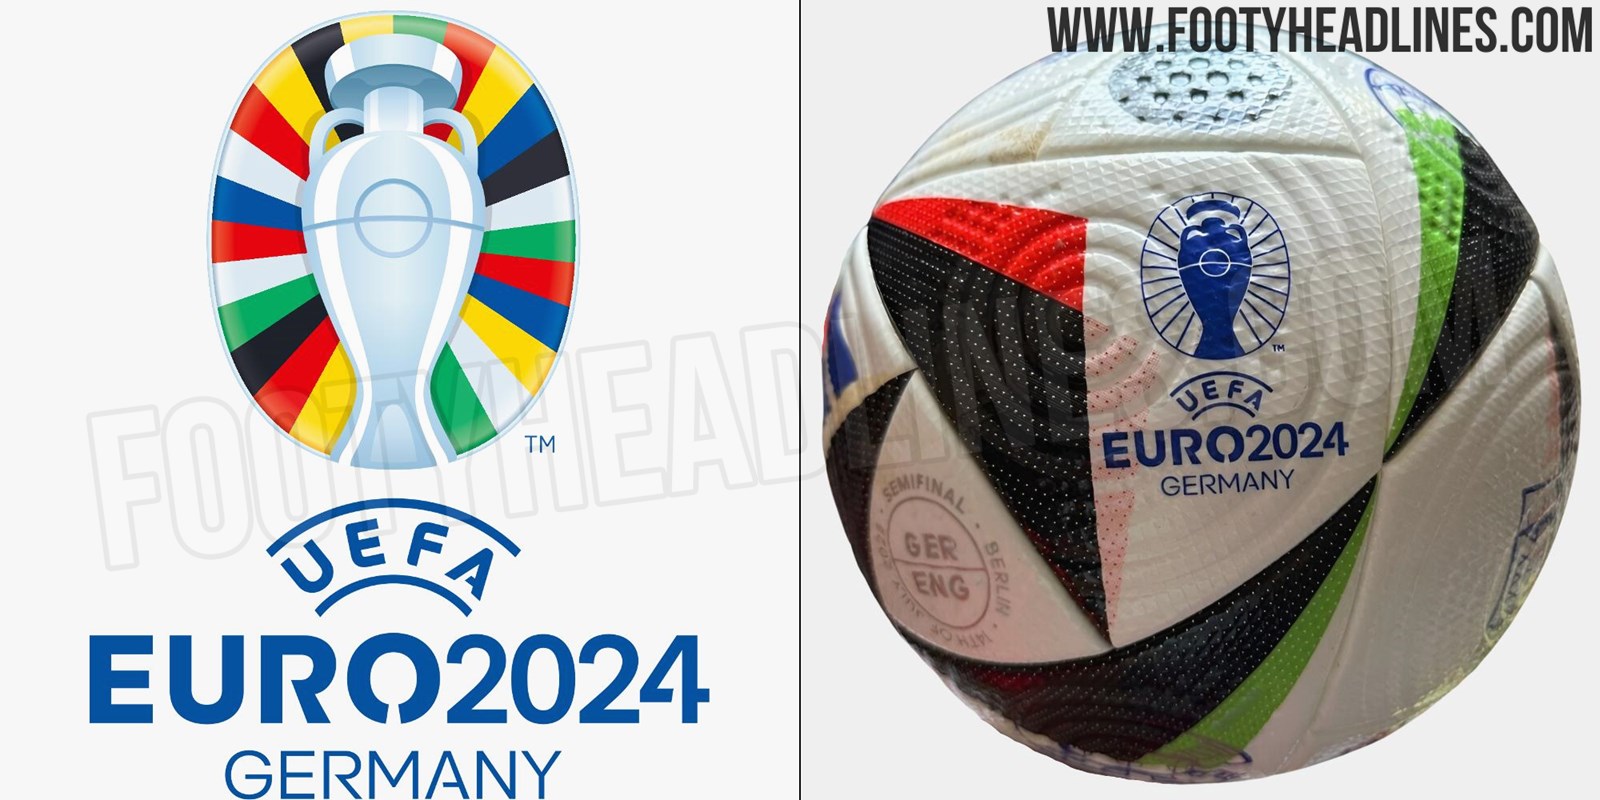 Exklusiv Futuristischer Adidas EURO 2024 Ball geleakt Nur Fussball